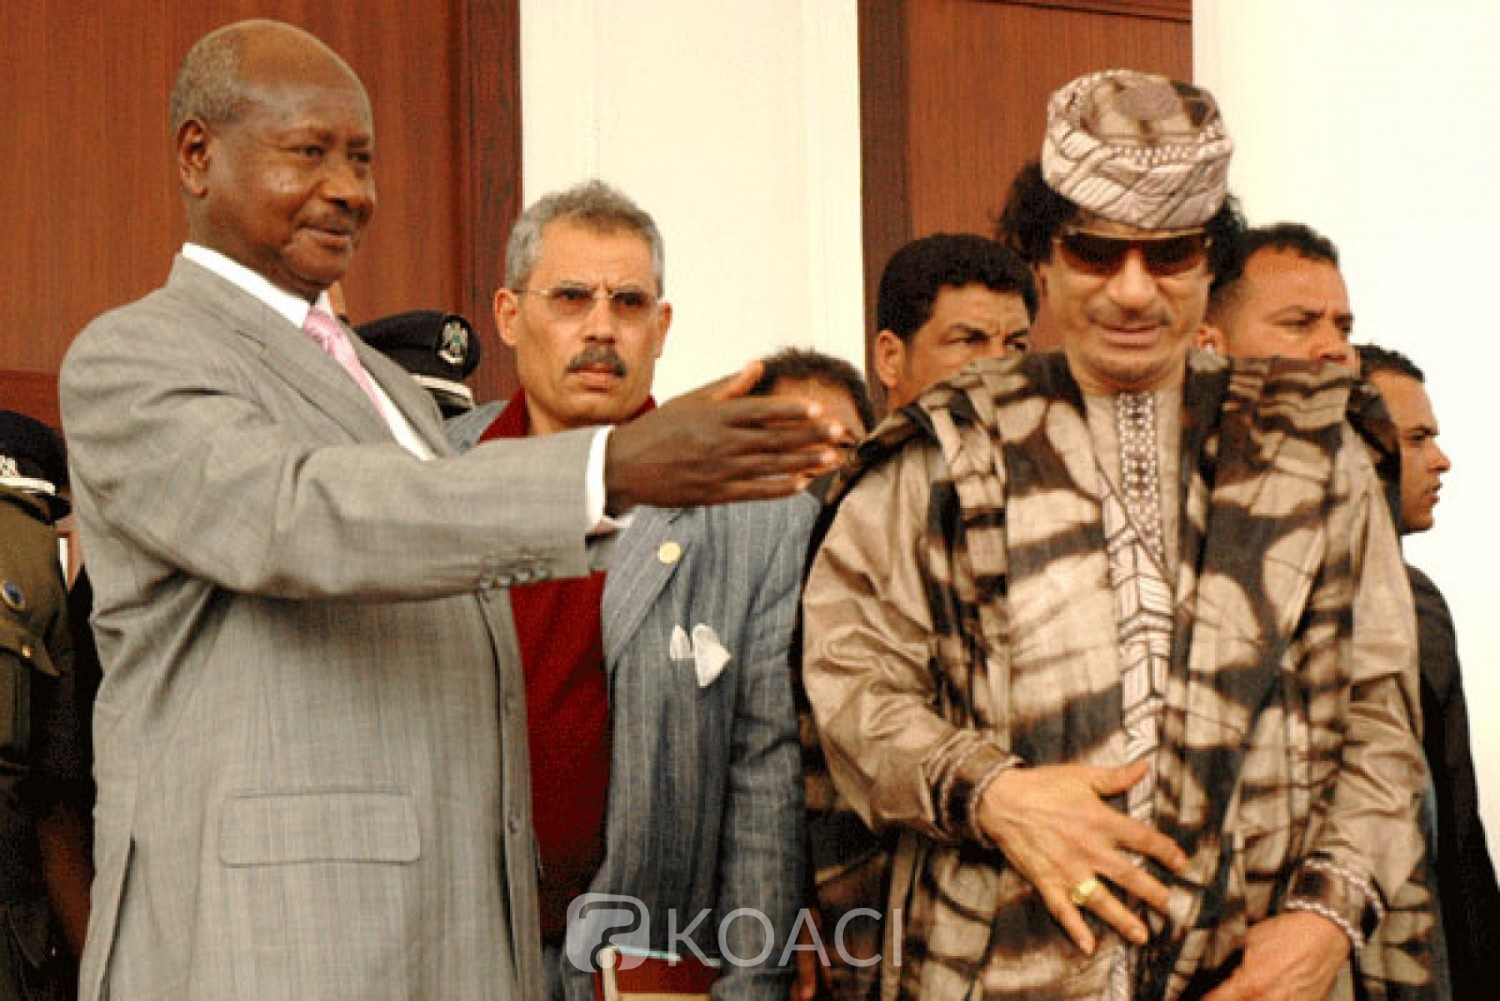 Ouganda-Libye: Pour Museveni, les africains auraient dû empêcher l'intervention de l'OTAN contre Kadhafi